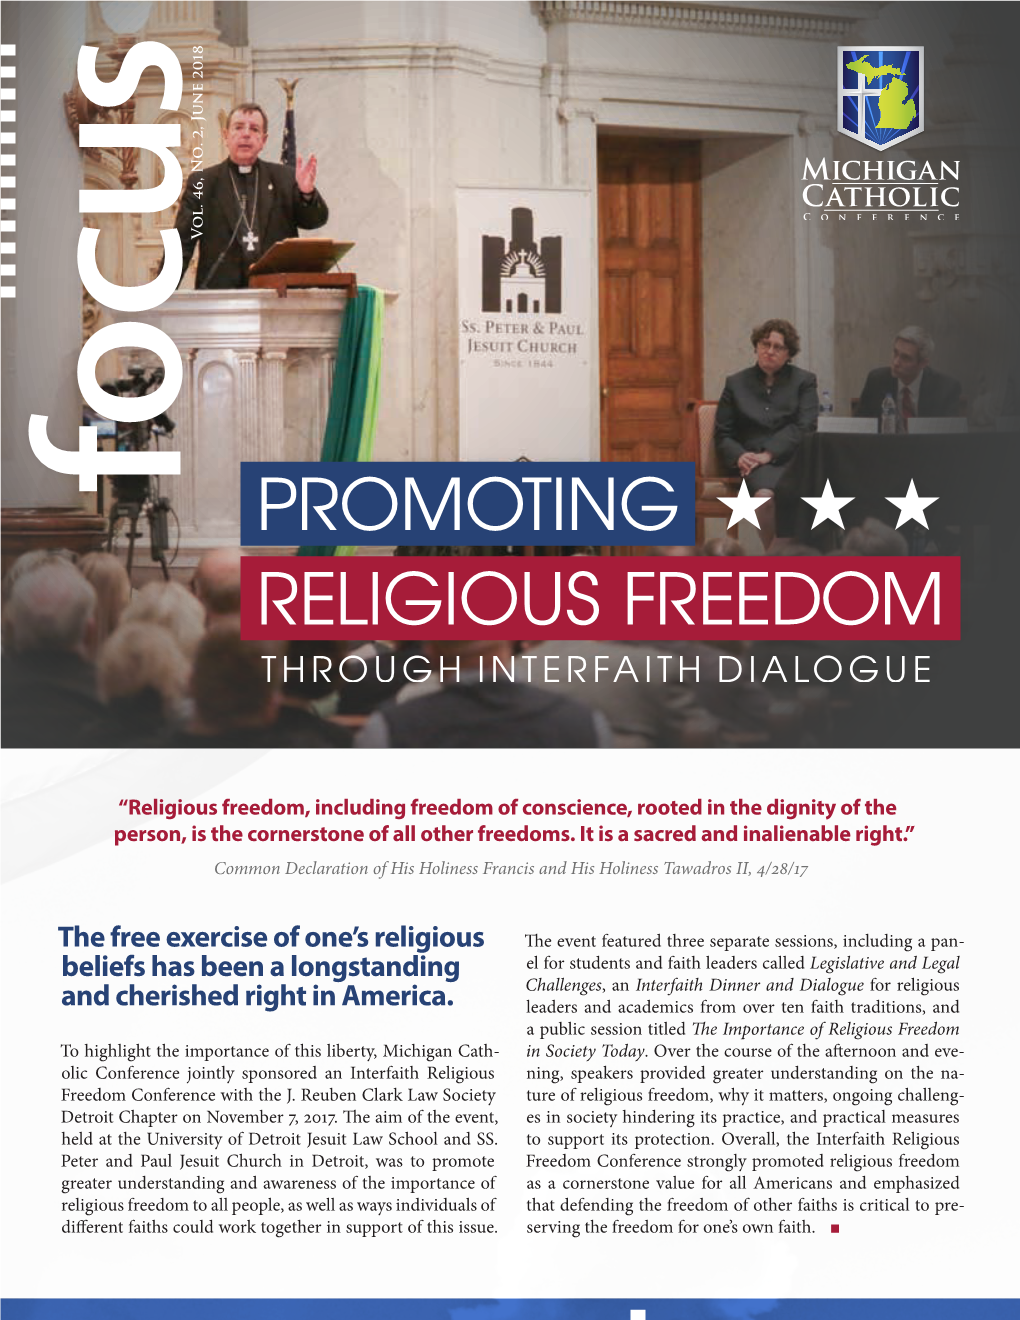 Promoting Religious Freedom Through Interfaith Dialogue